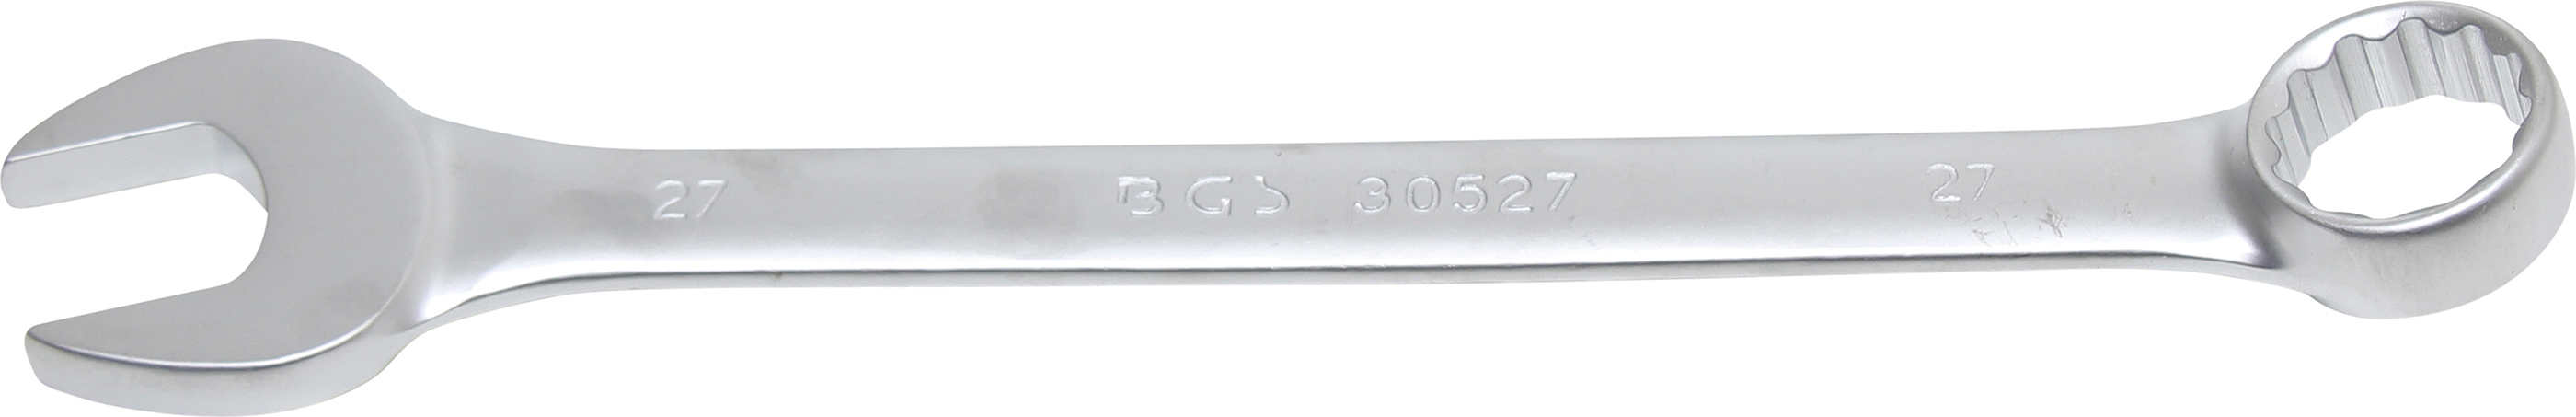 BGS 30527 Cheie combinata, 27 mm